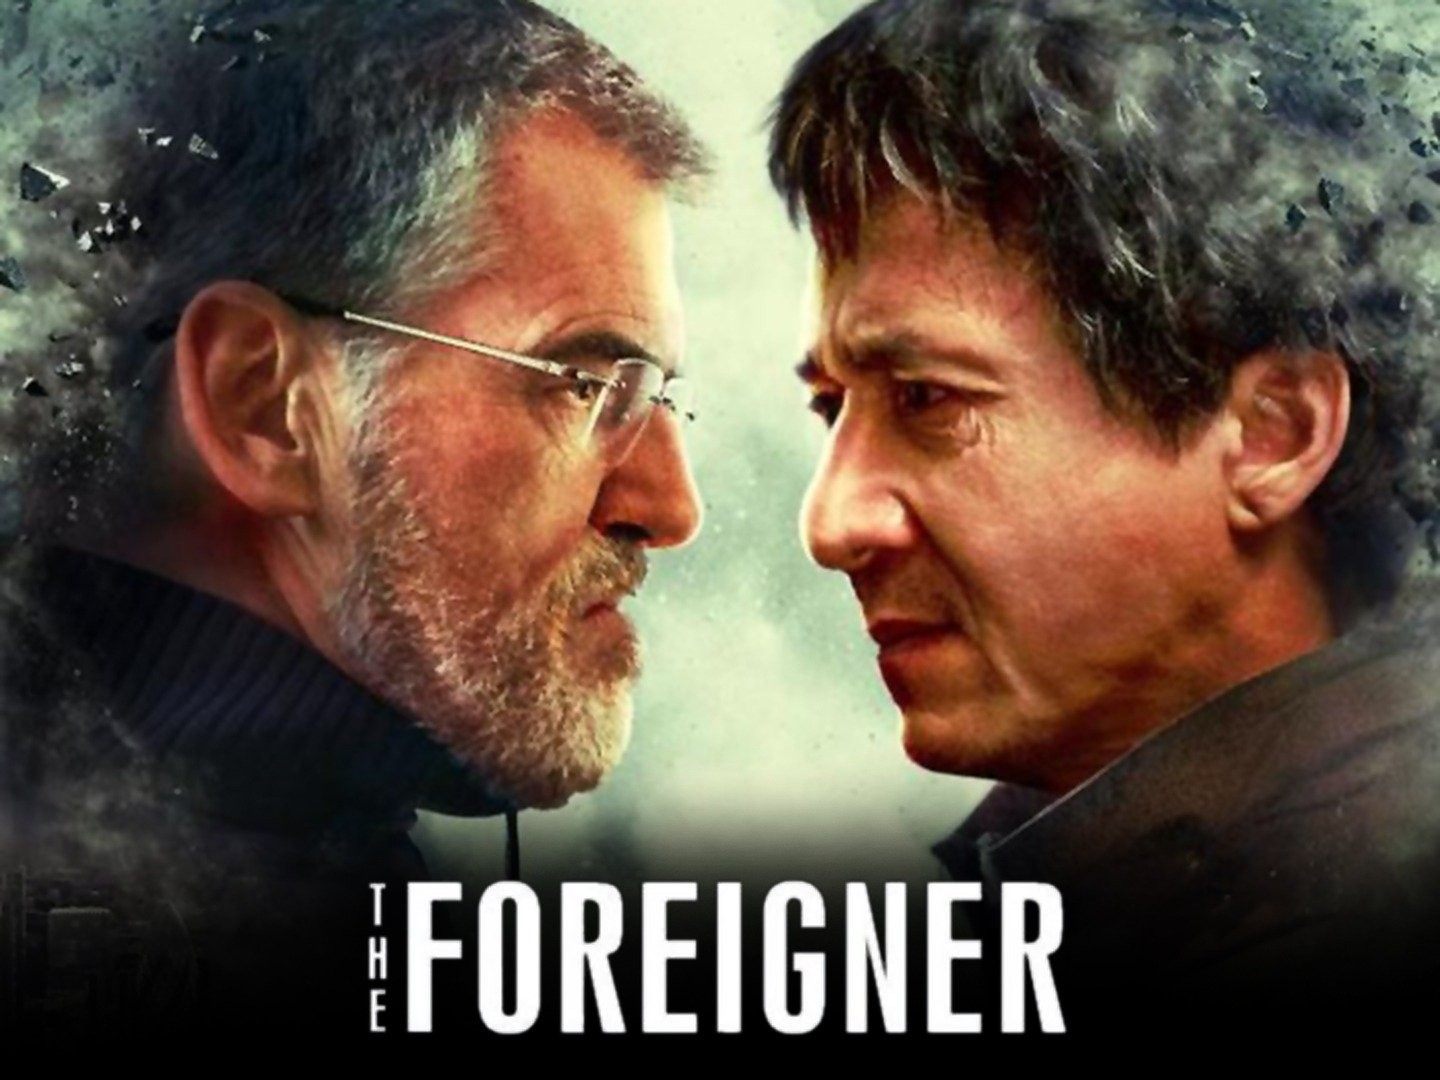 Crítica: O Estrangeiro (2017) - O Novo Filme do Jackie Chan